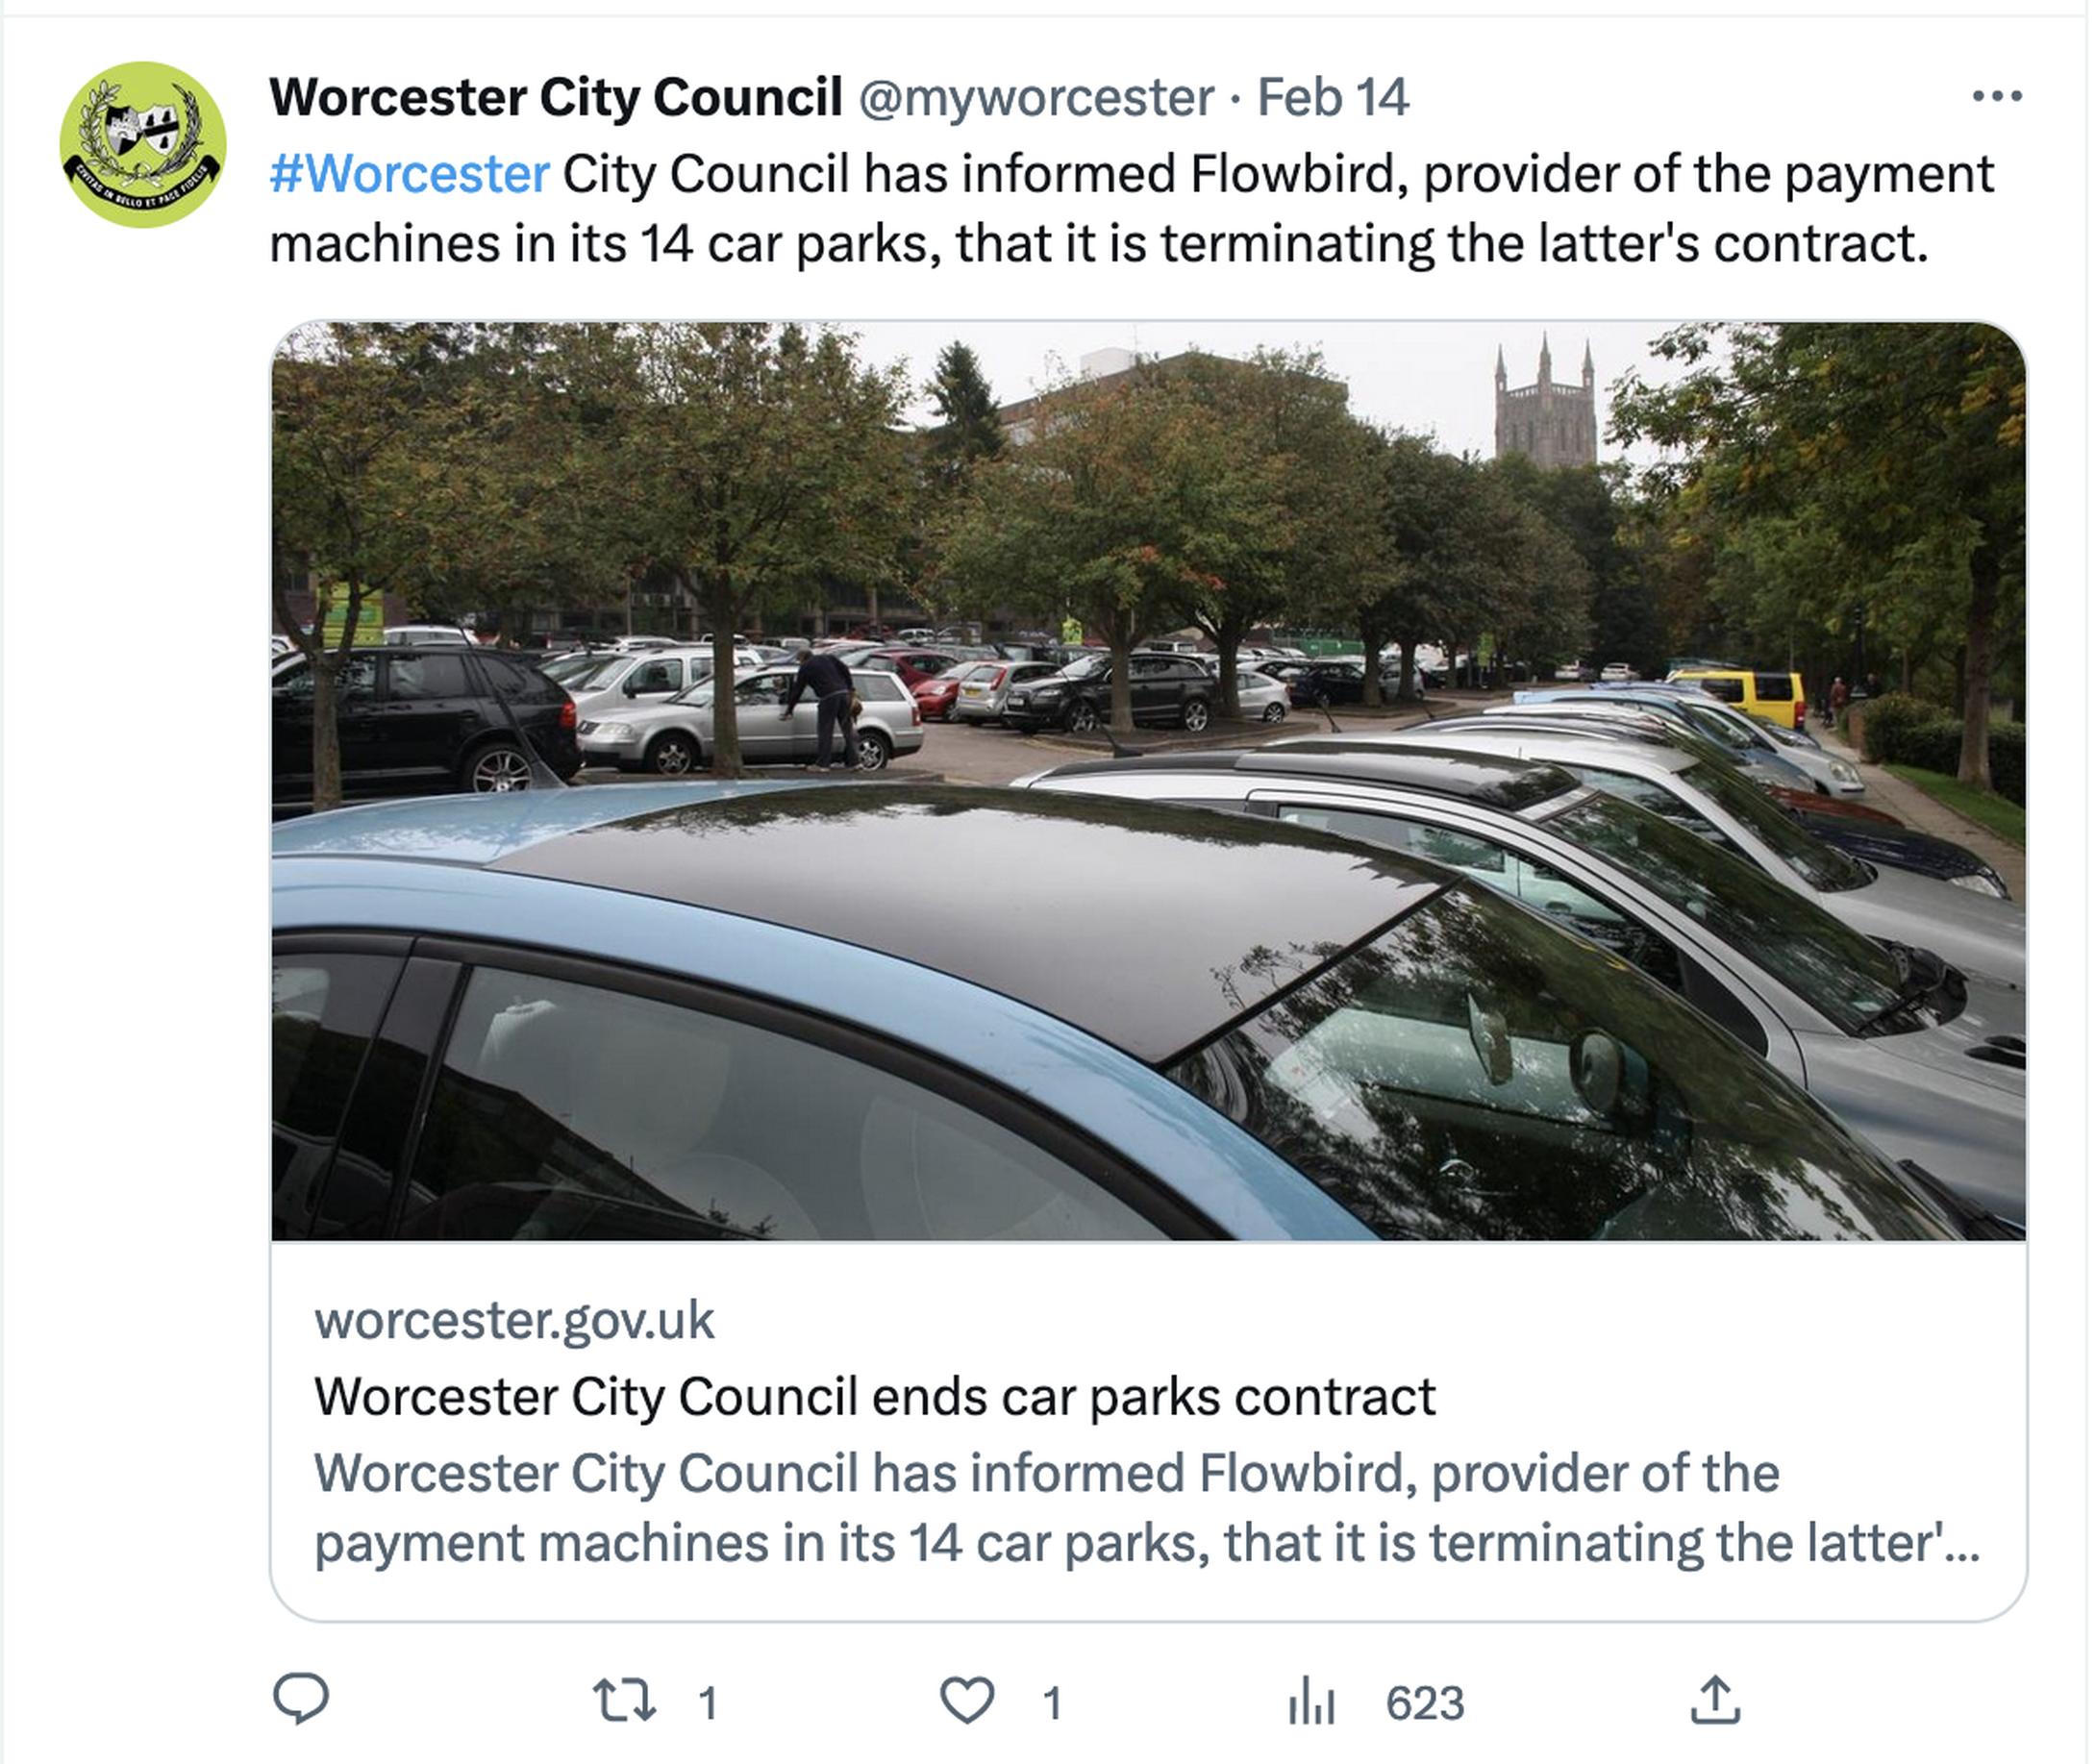 Worcester City Council ends Flowbird's car park contract